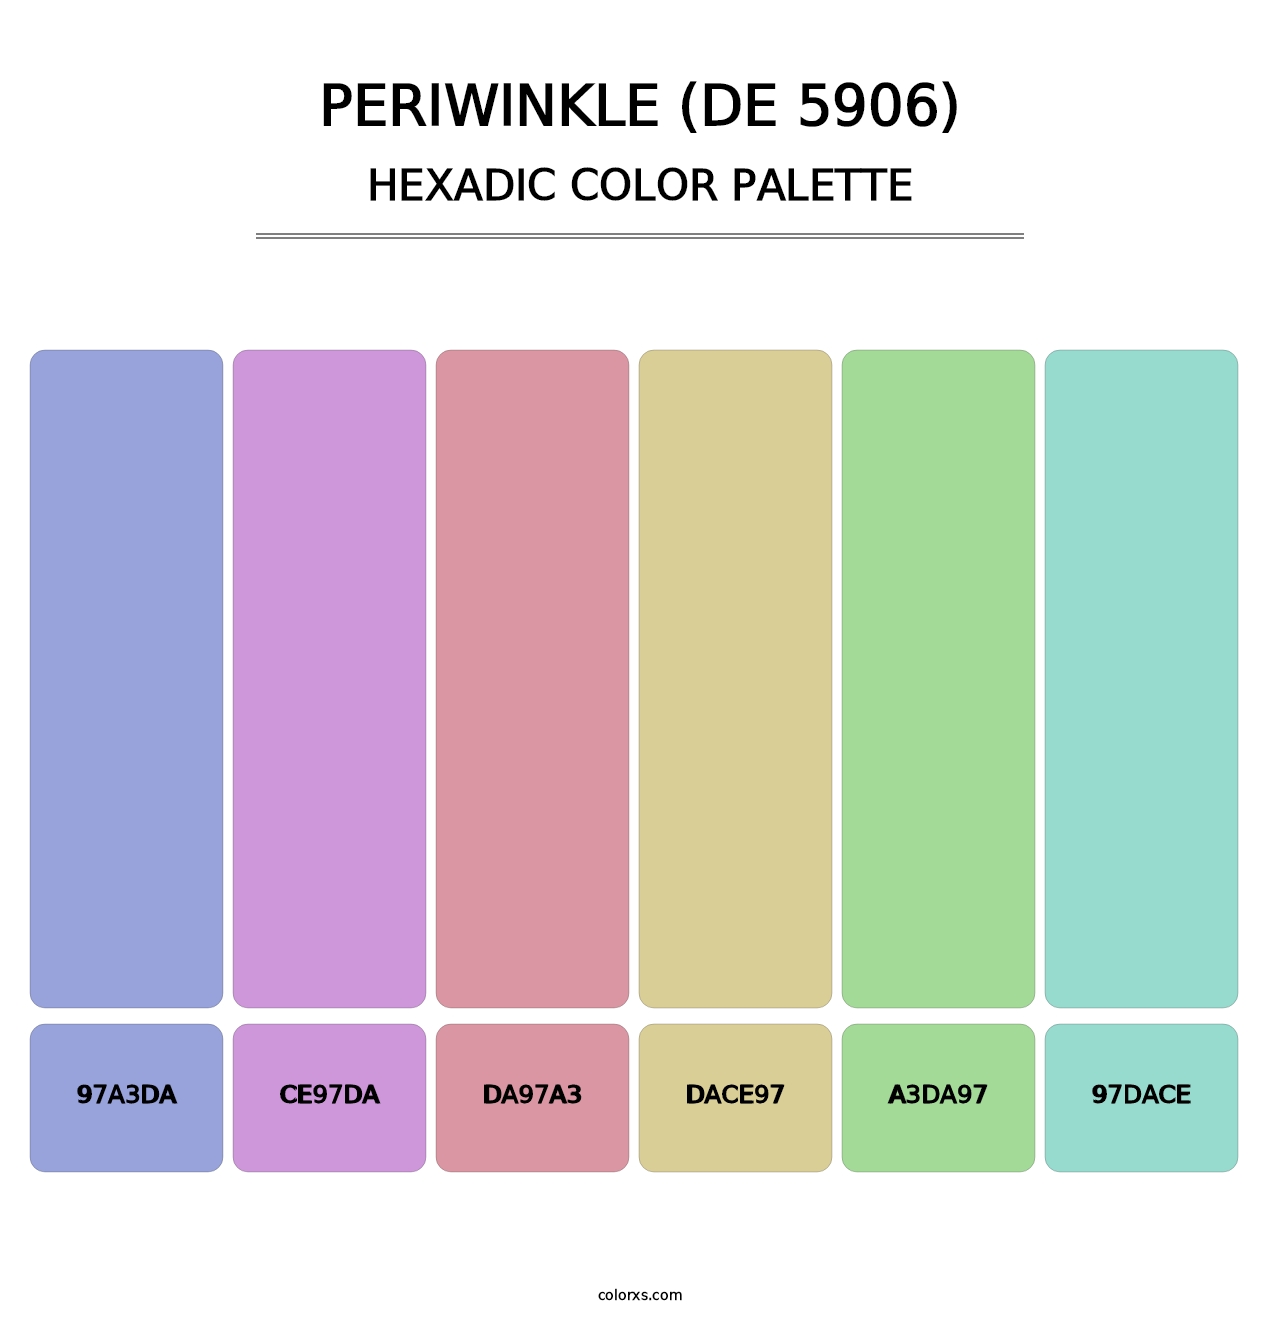 Periwinkle (DE 5906) - Hexadic Color Palette